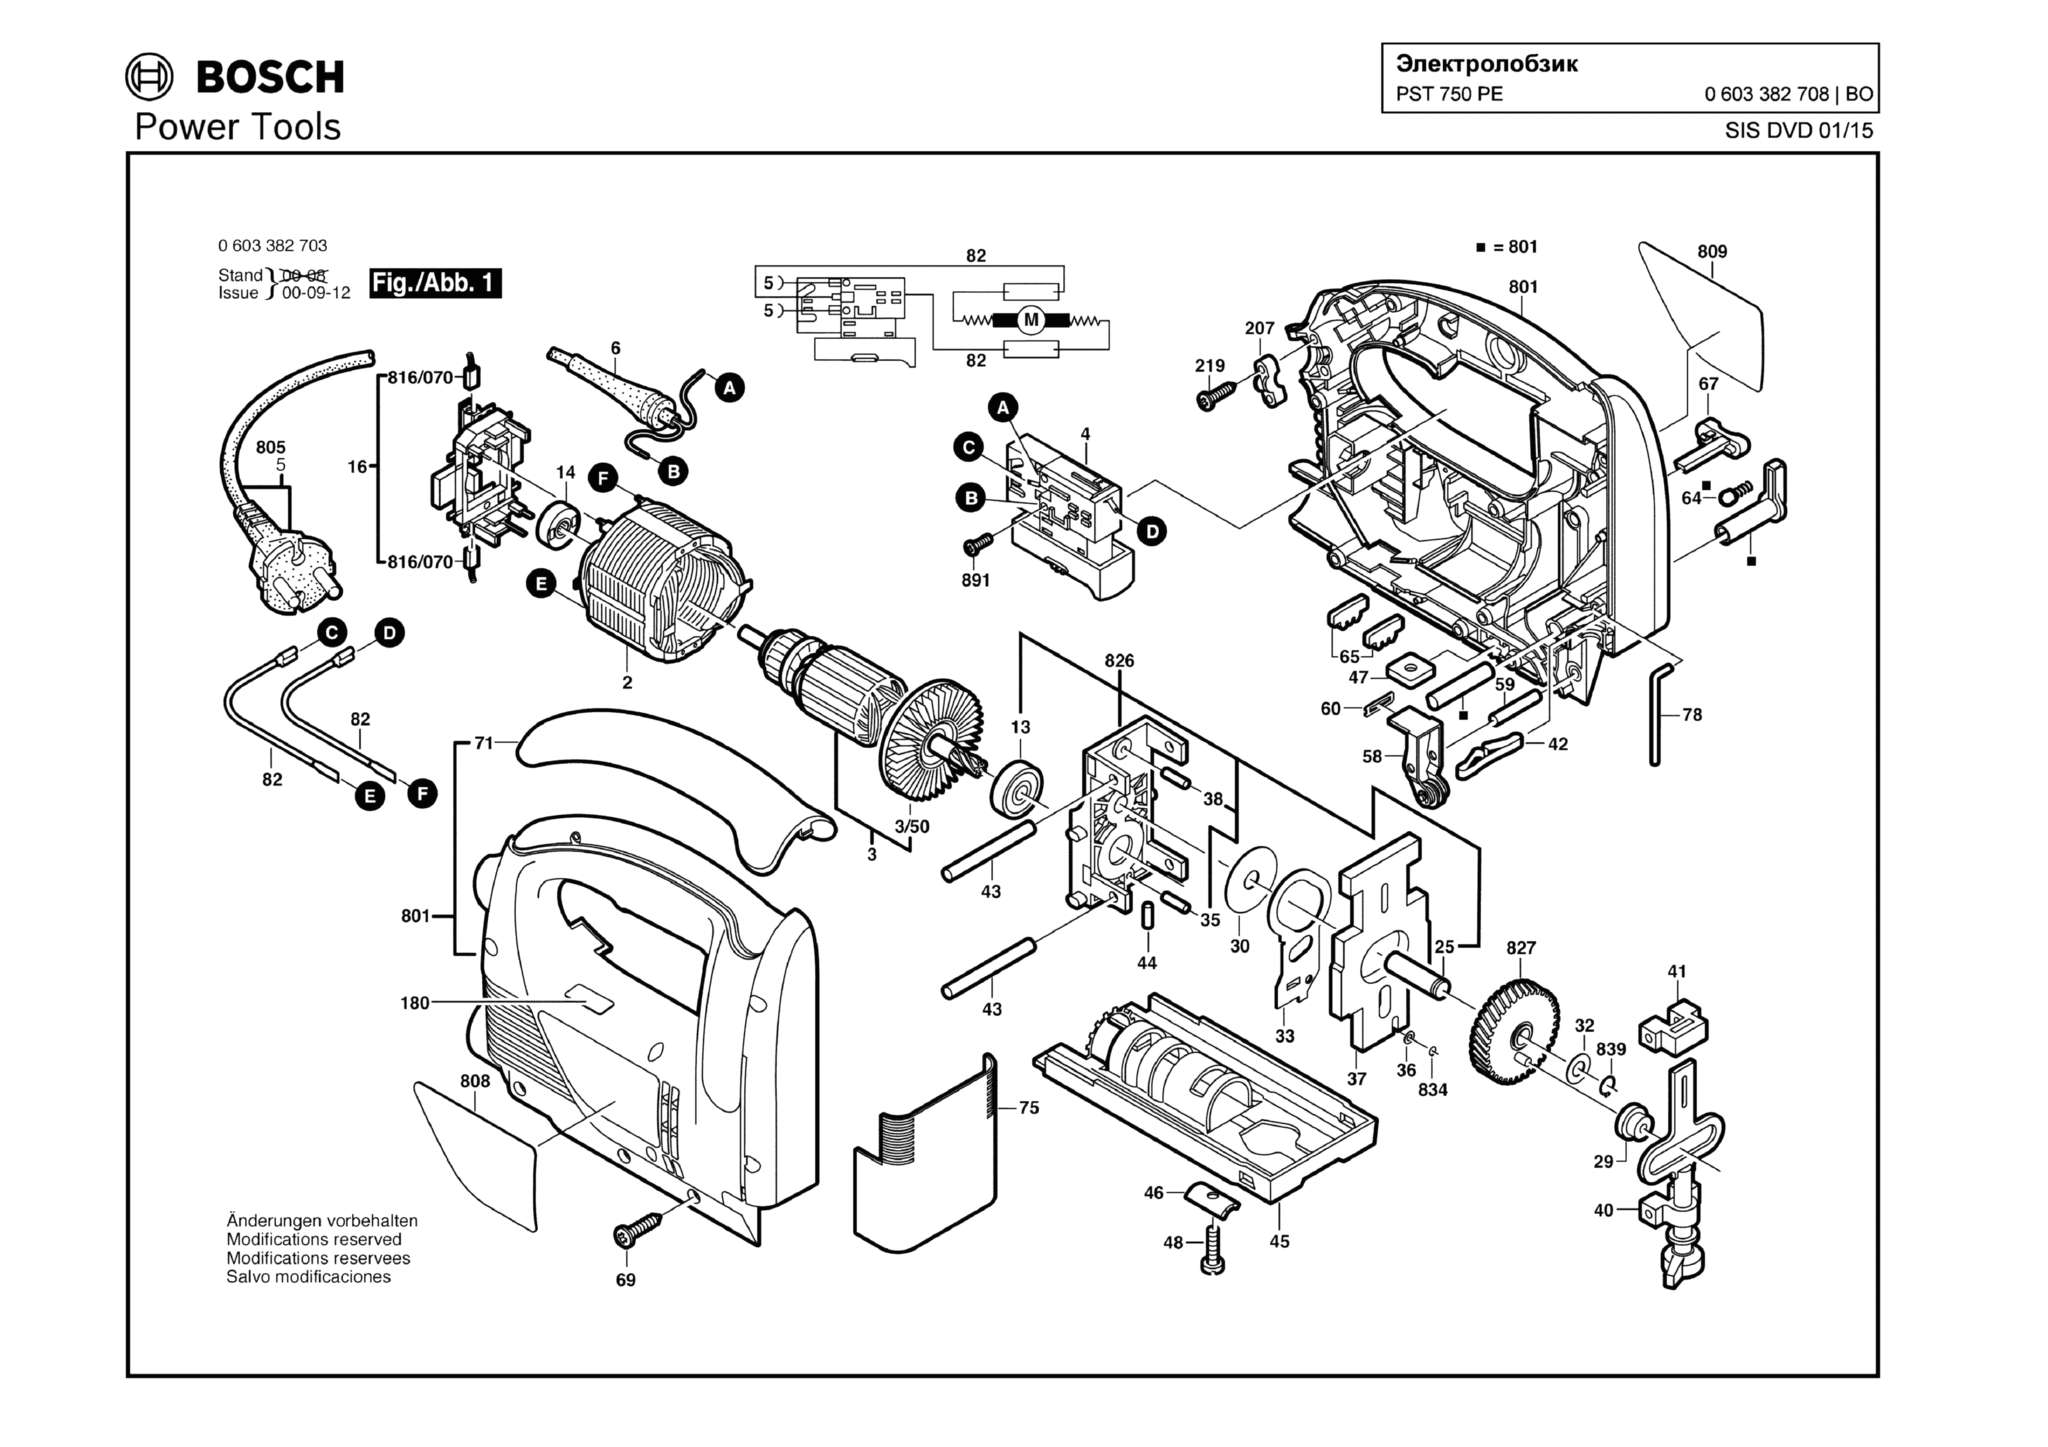 Запчасти, схема и деталировка Bosch PST 750 PE (ТИП 0603382708)